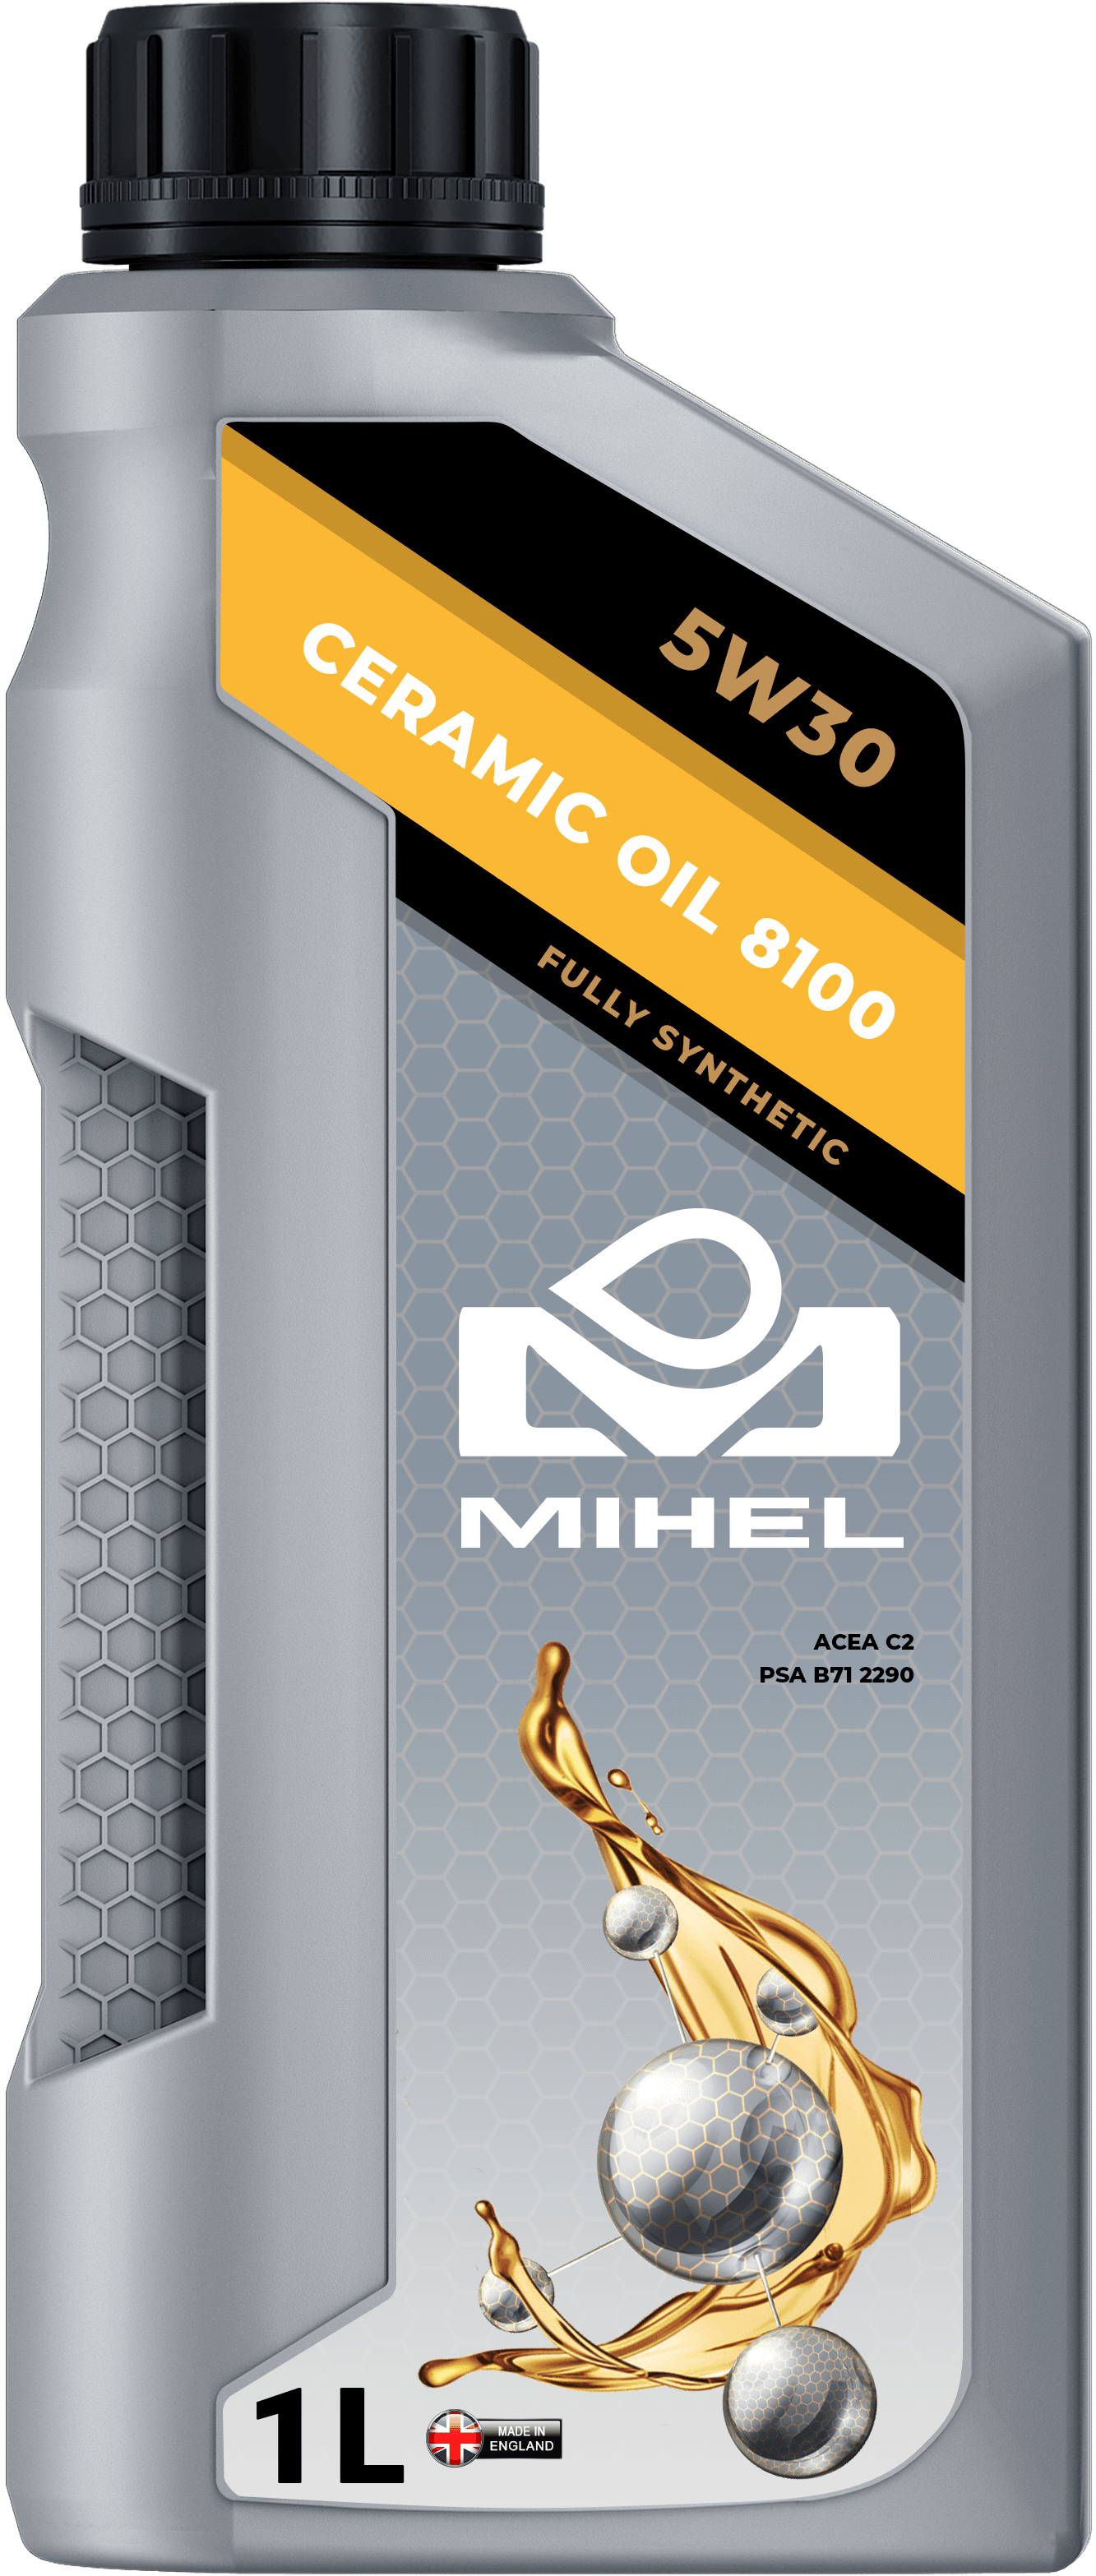 MIHEL Ceramic Oil® 8100 5W30